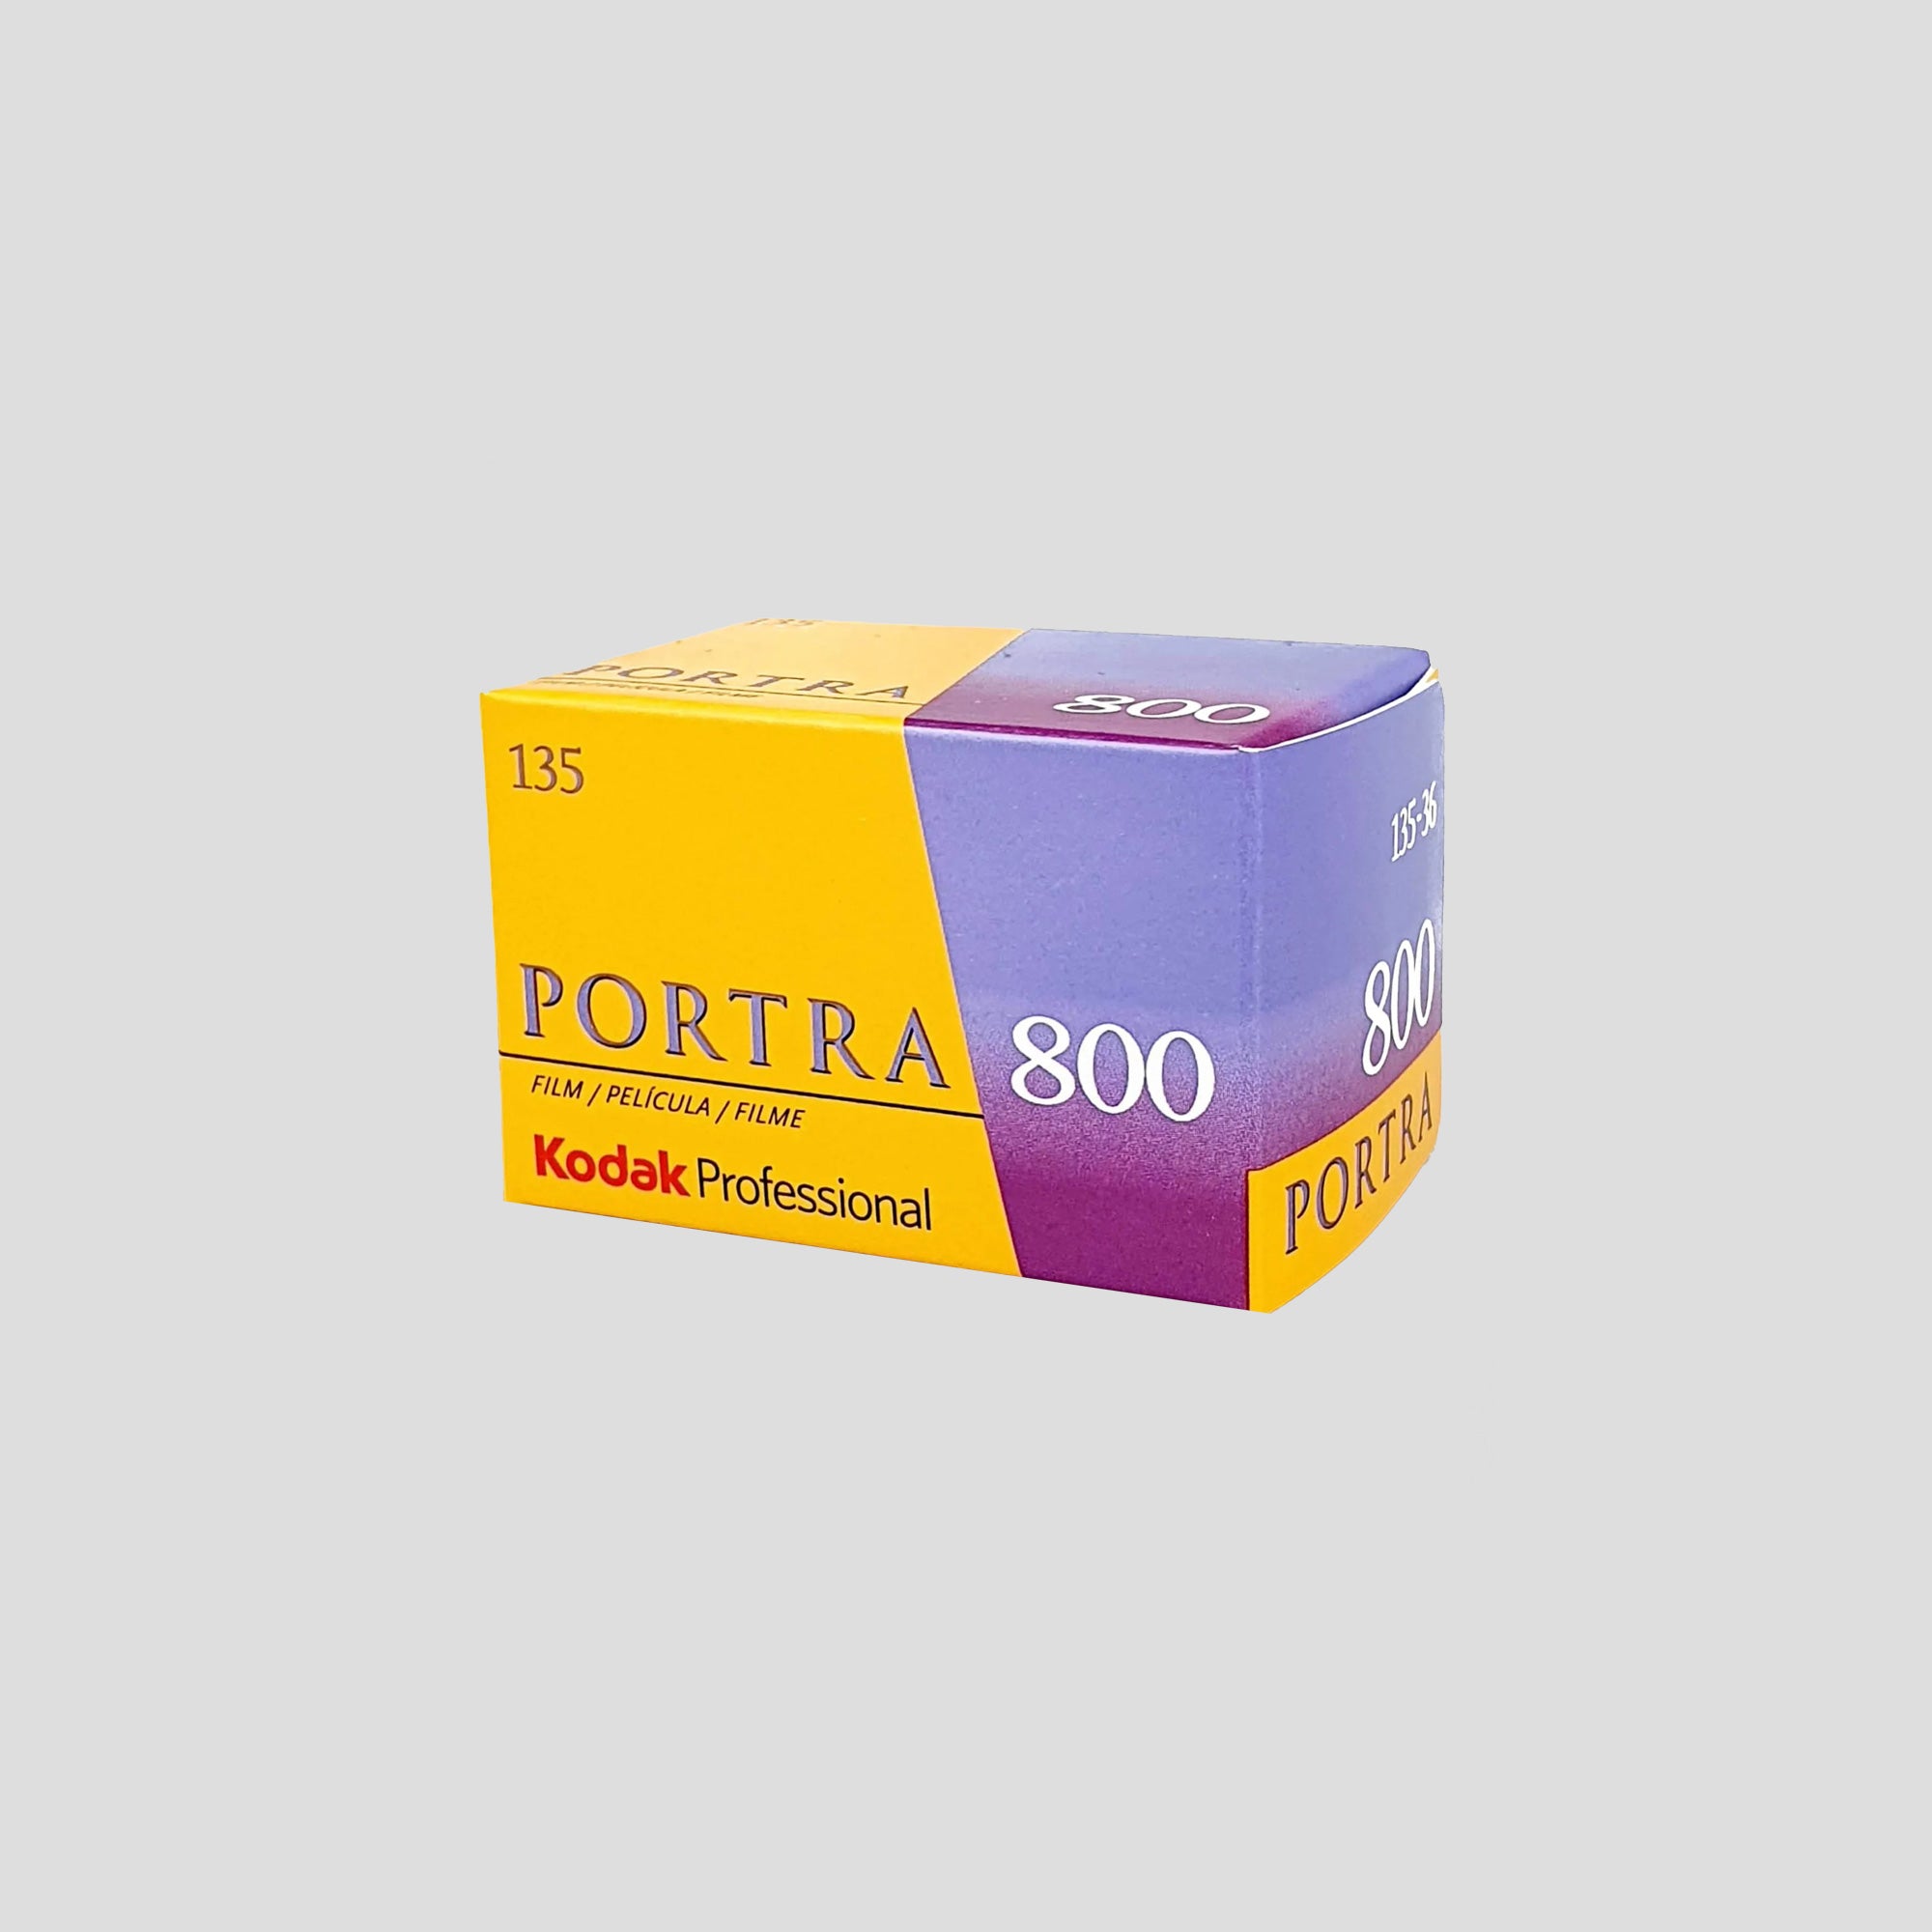 Kodak Portra 800 35mm Film